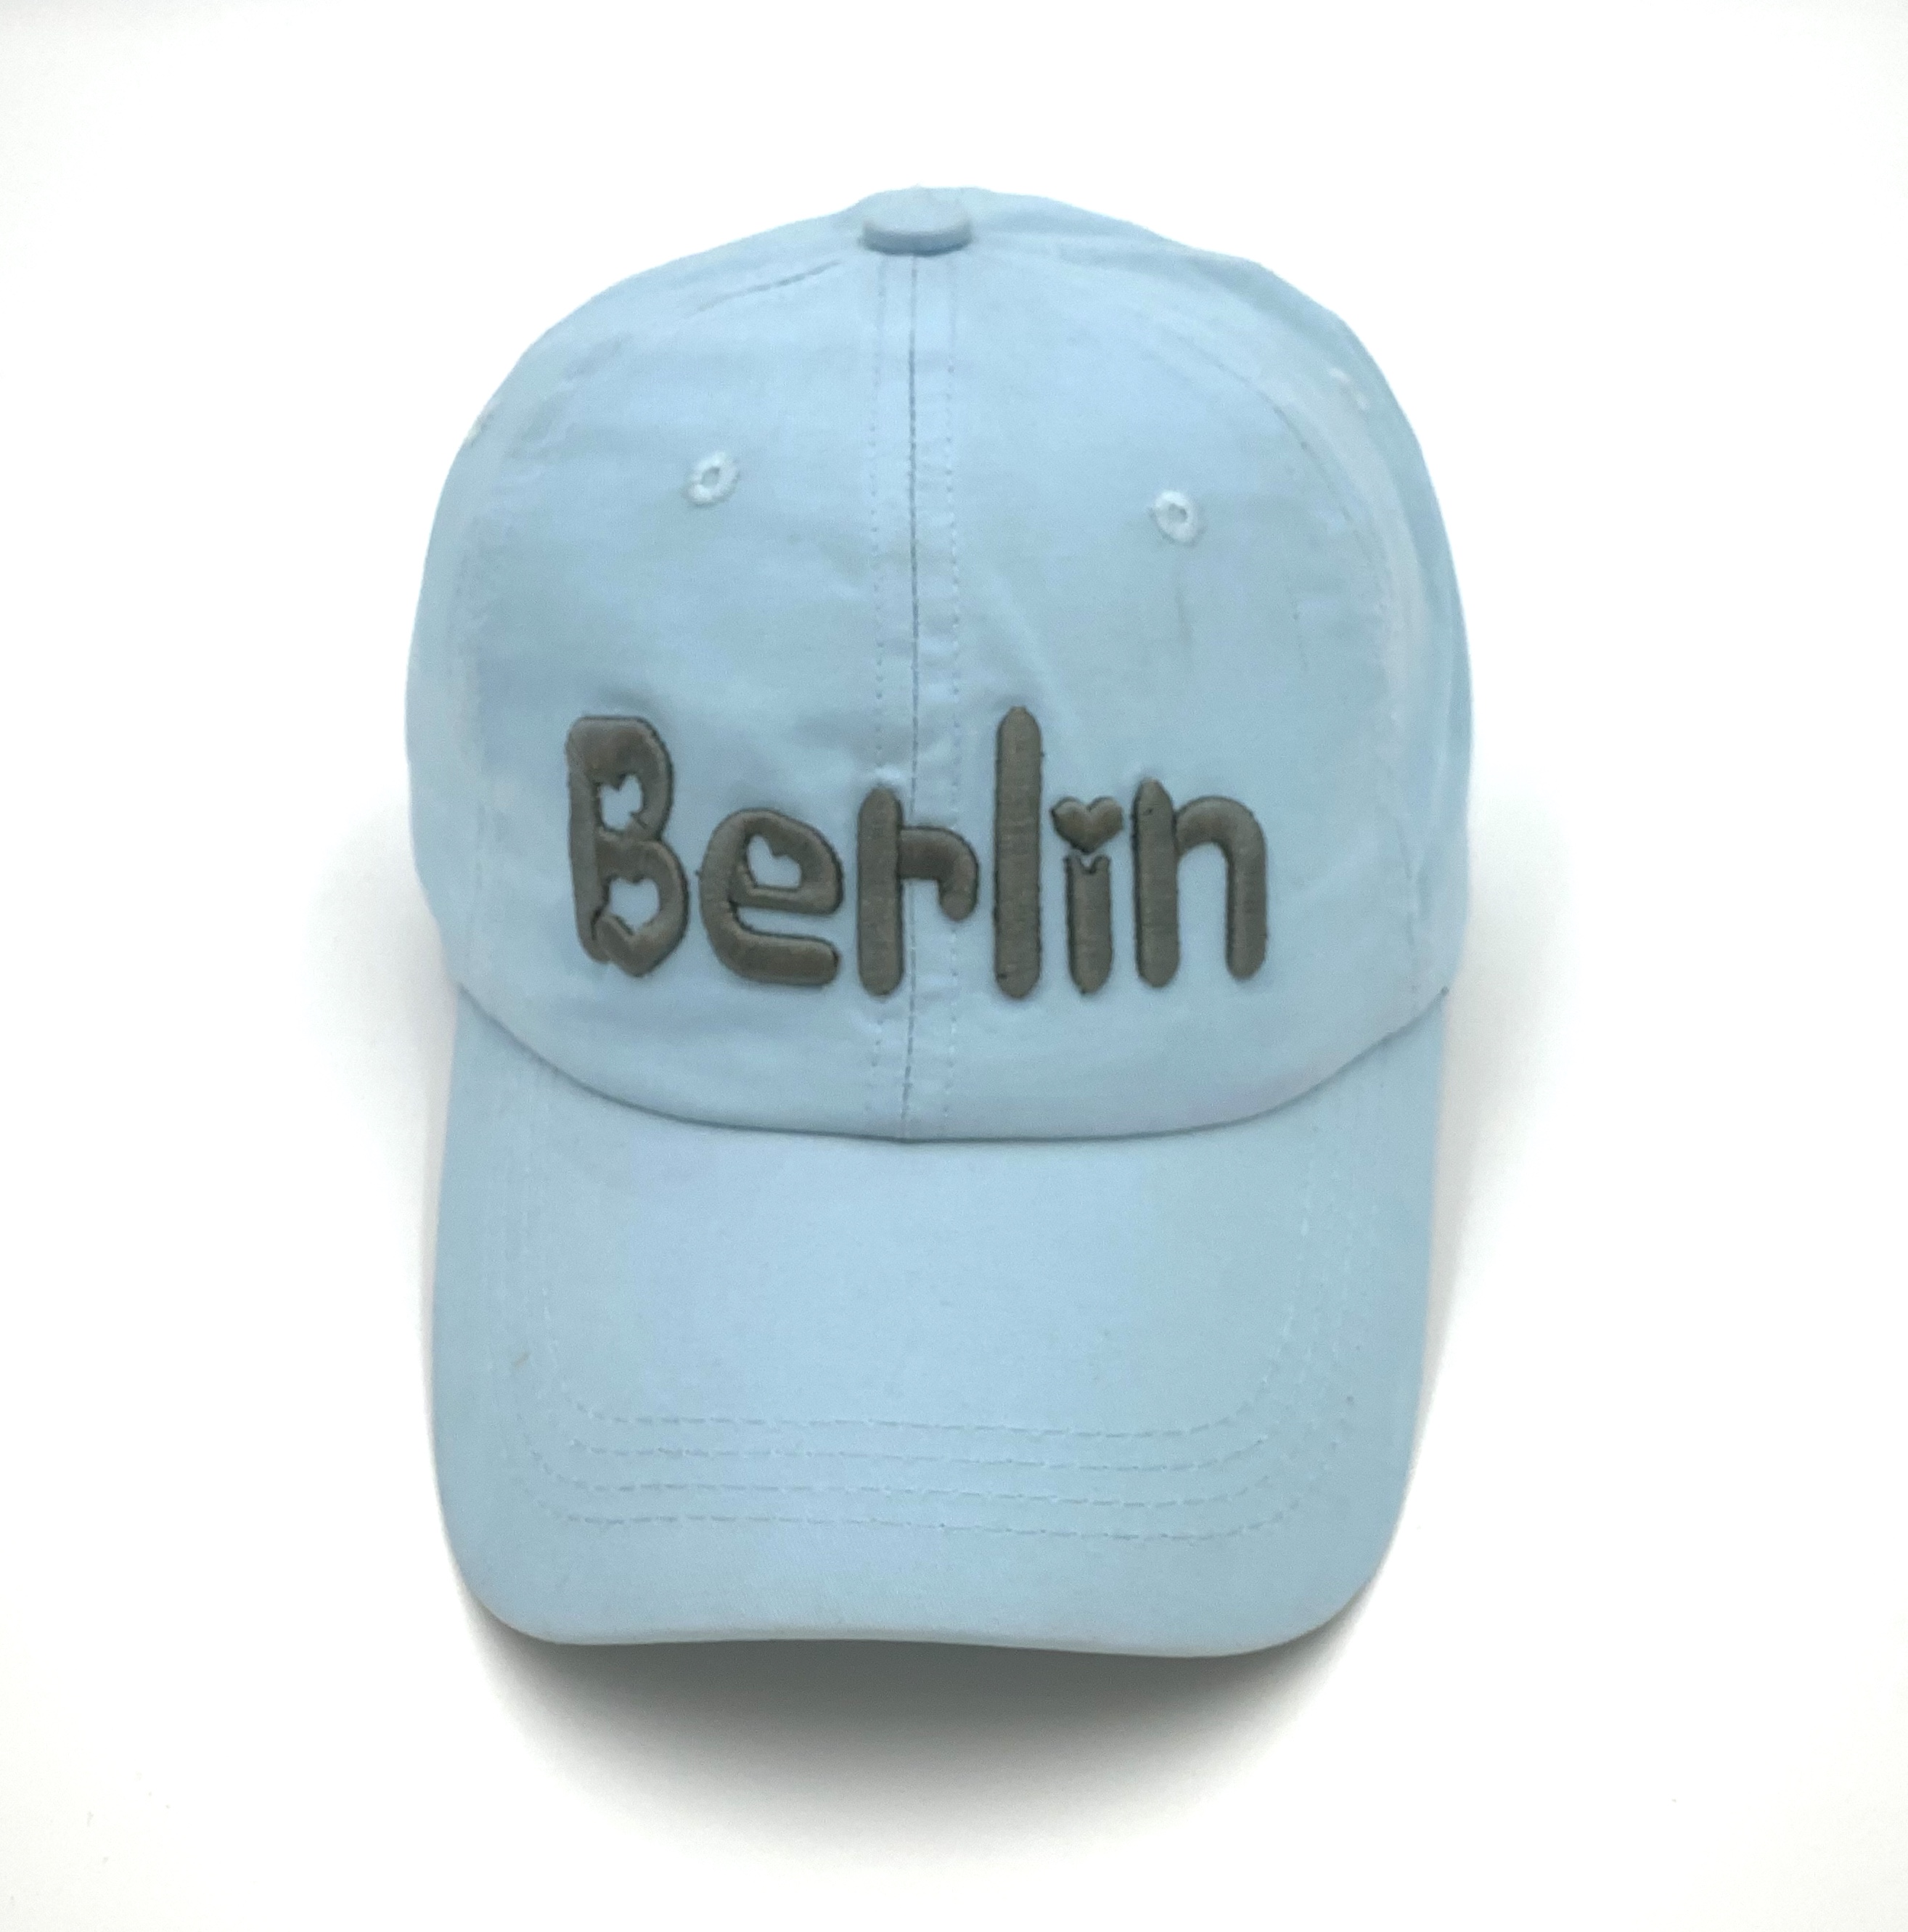 Berlin Cap